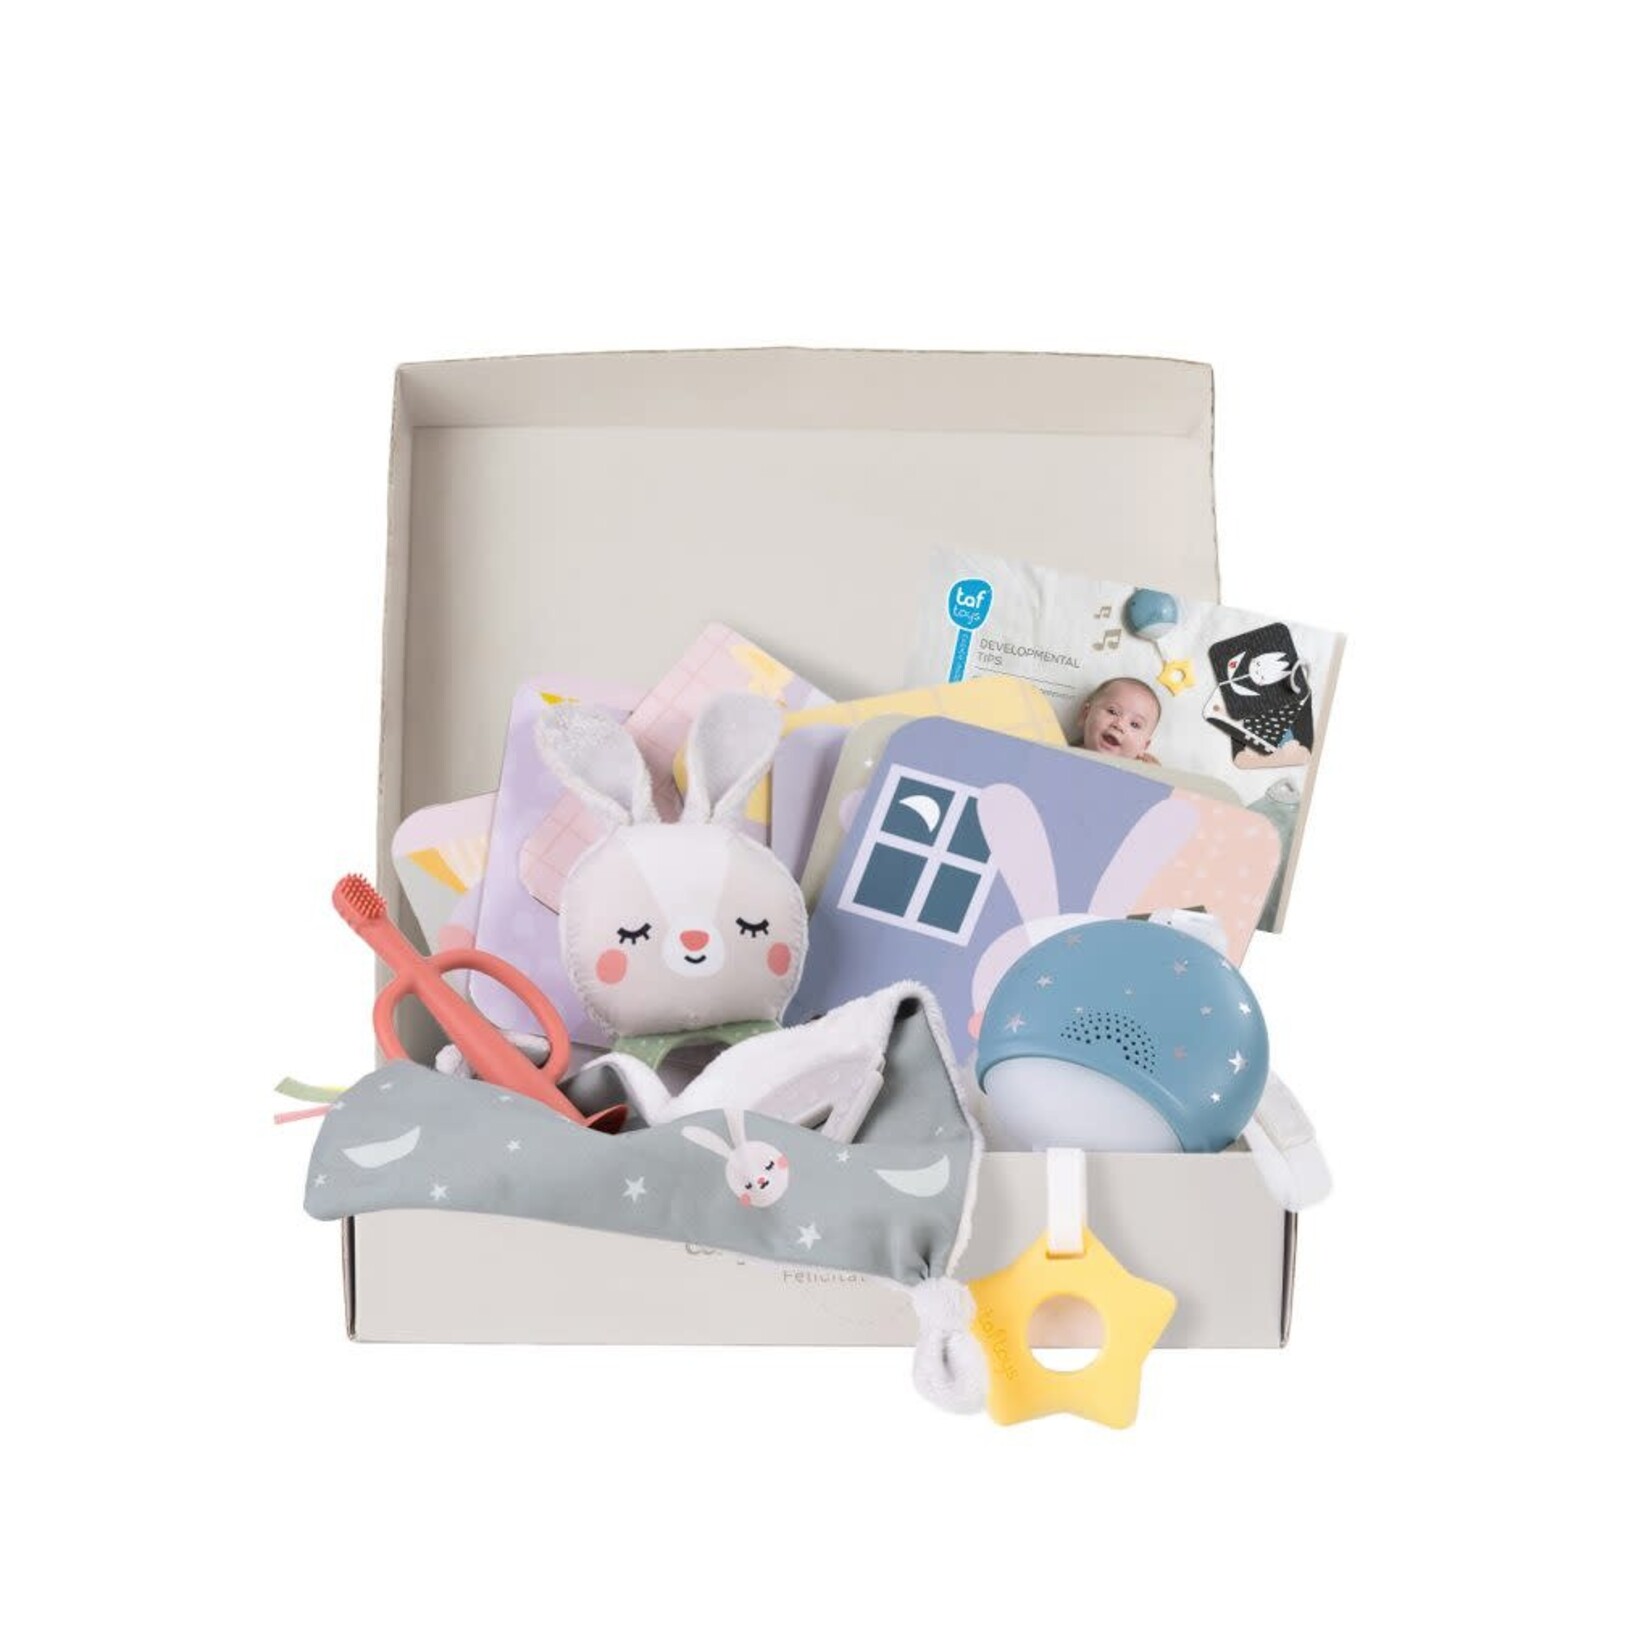 Taf Toys Taf Toys - Bedtime Kit